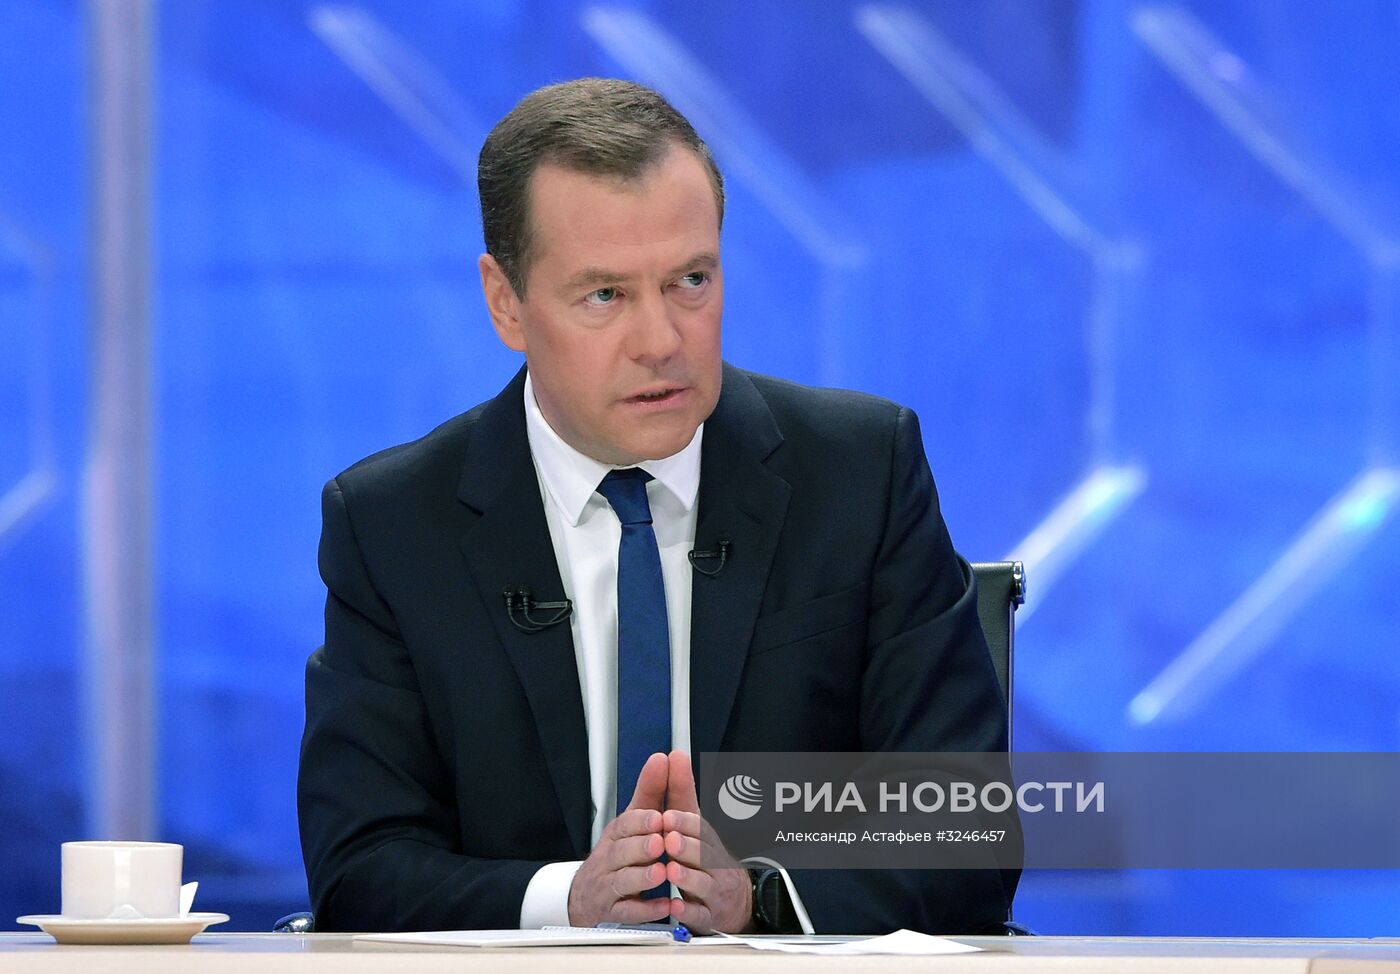 Интервью премьер-министра РФ Д. Медведева российским телеканалам